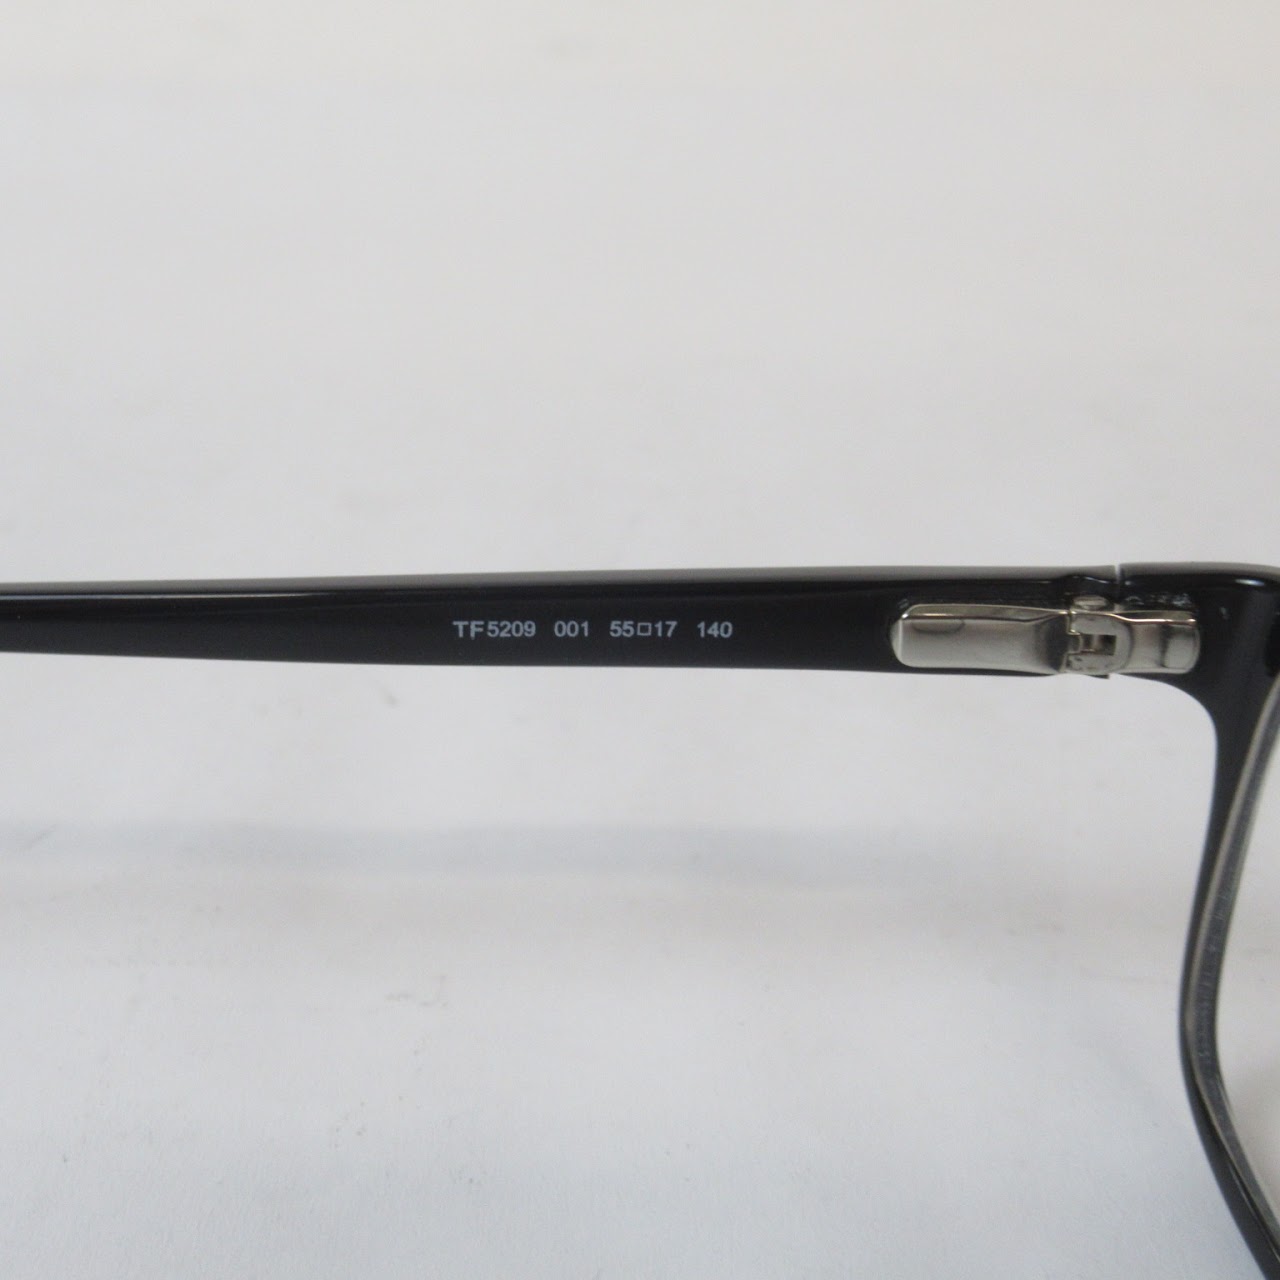 Tom Ford R/X Eyeglasses